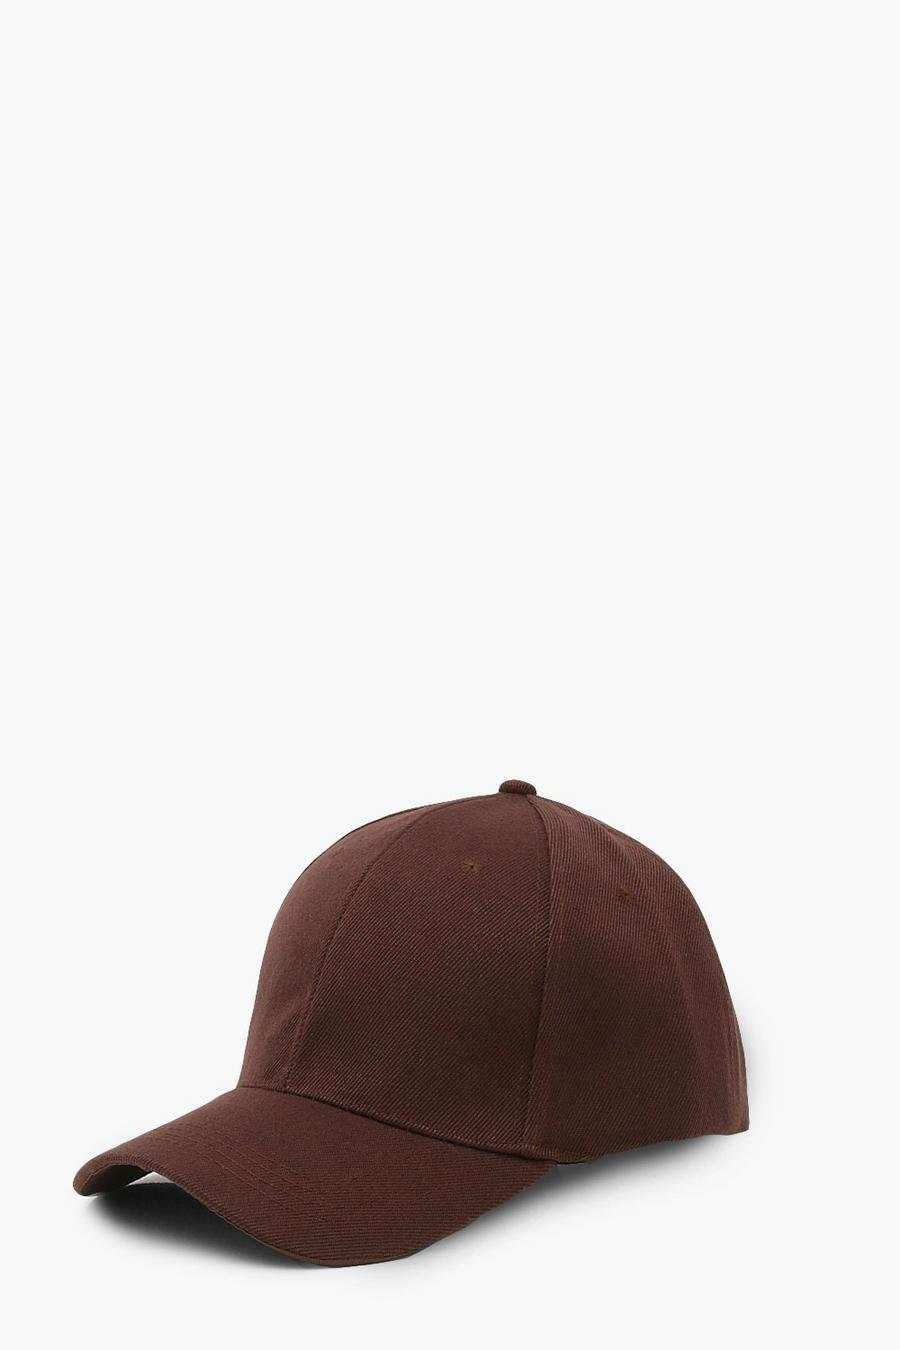 כובע מצחייה בצבע שוקולד